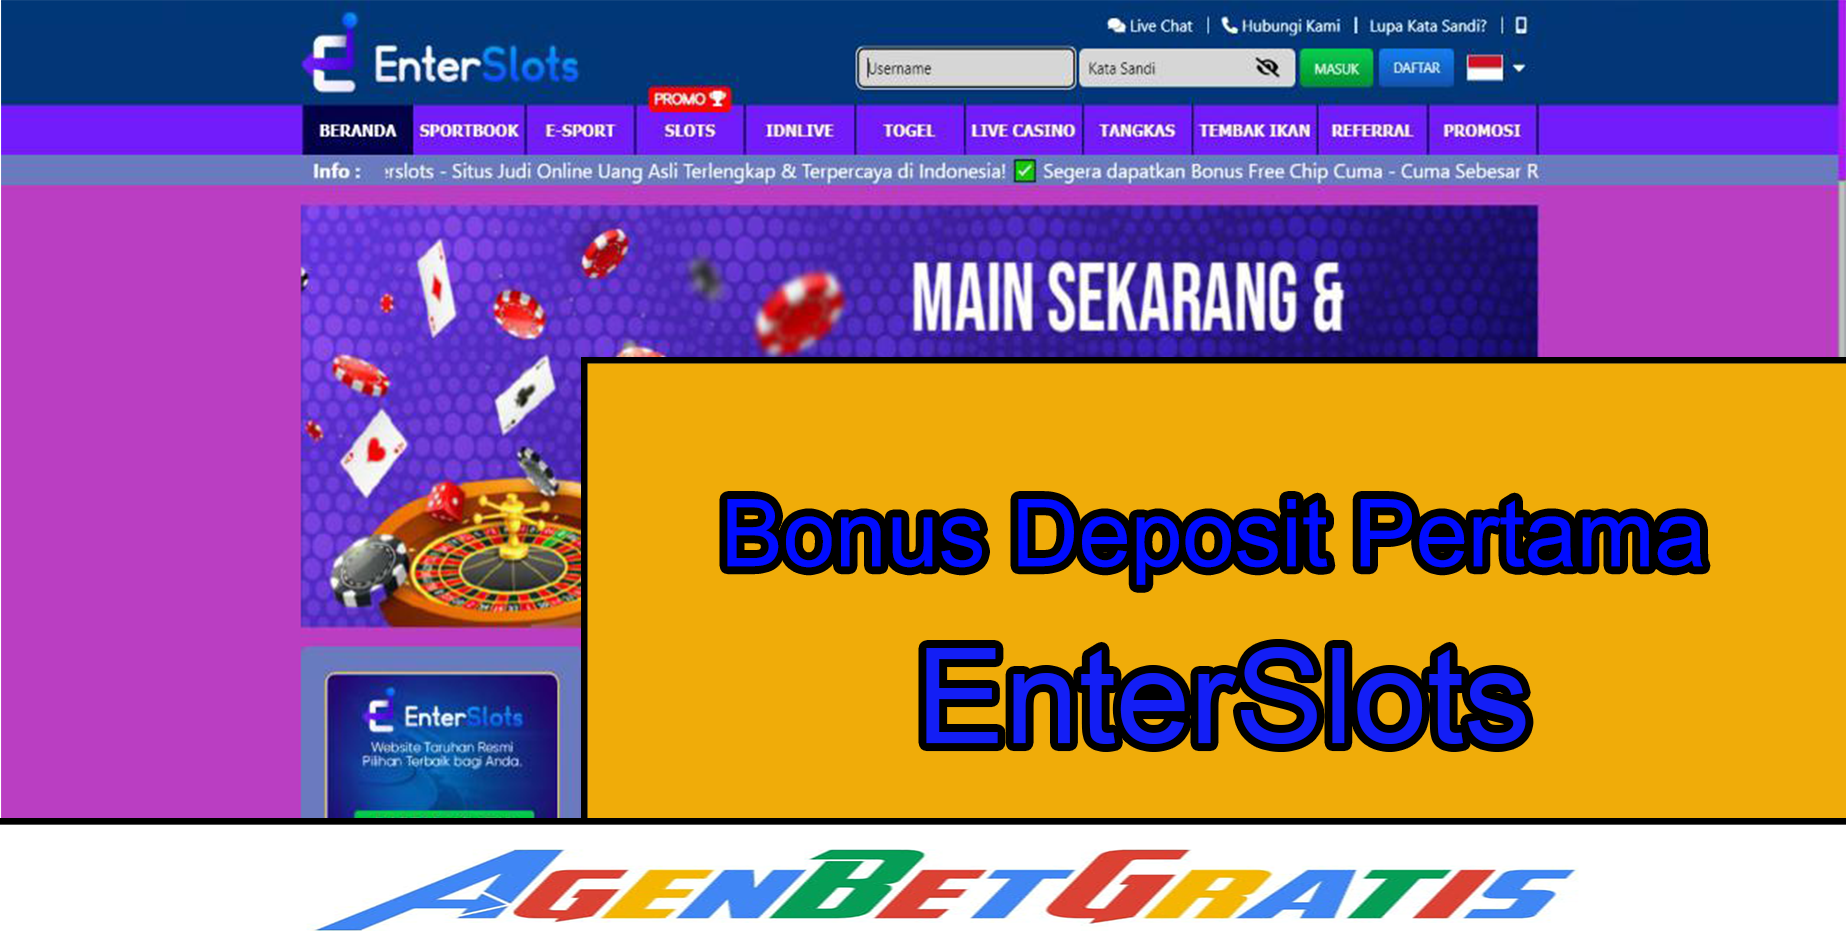 ENTERSLOTS - Bonus Deposit Pertama